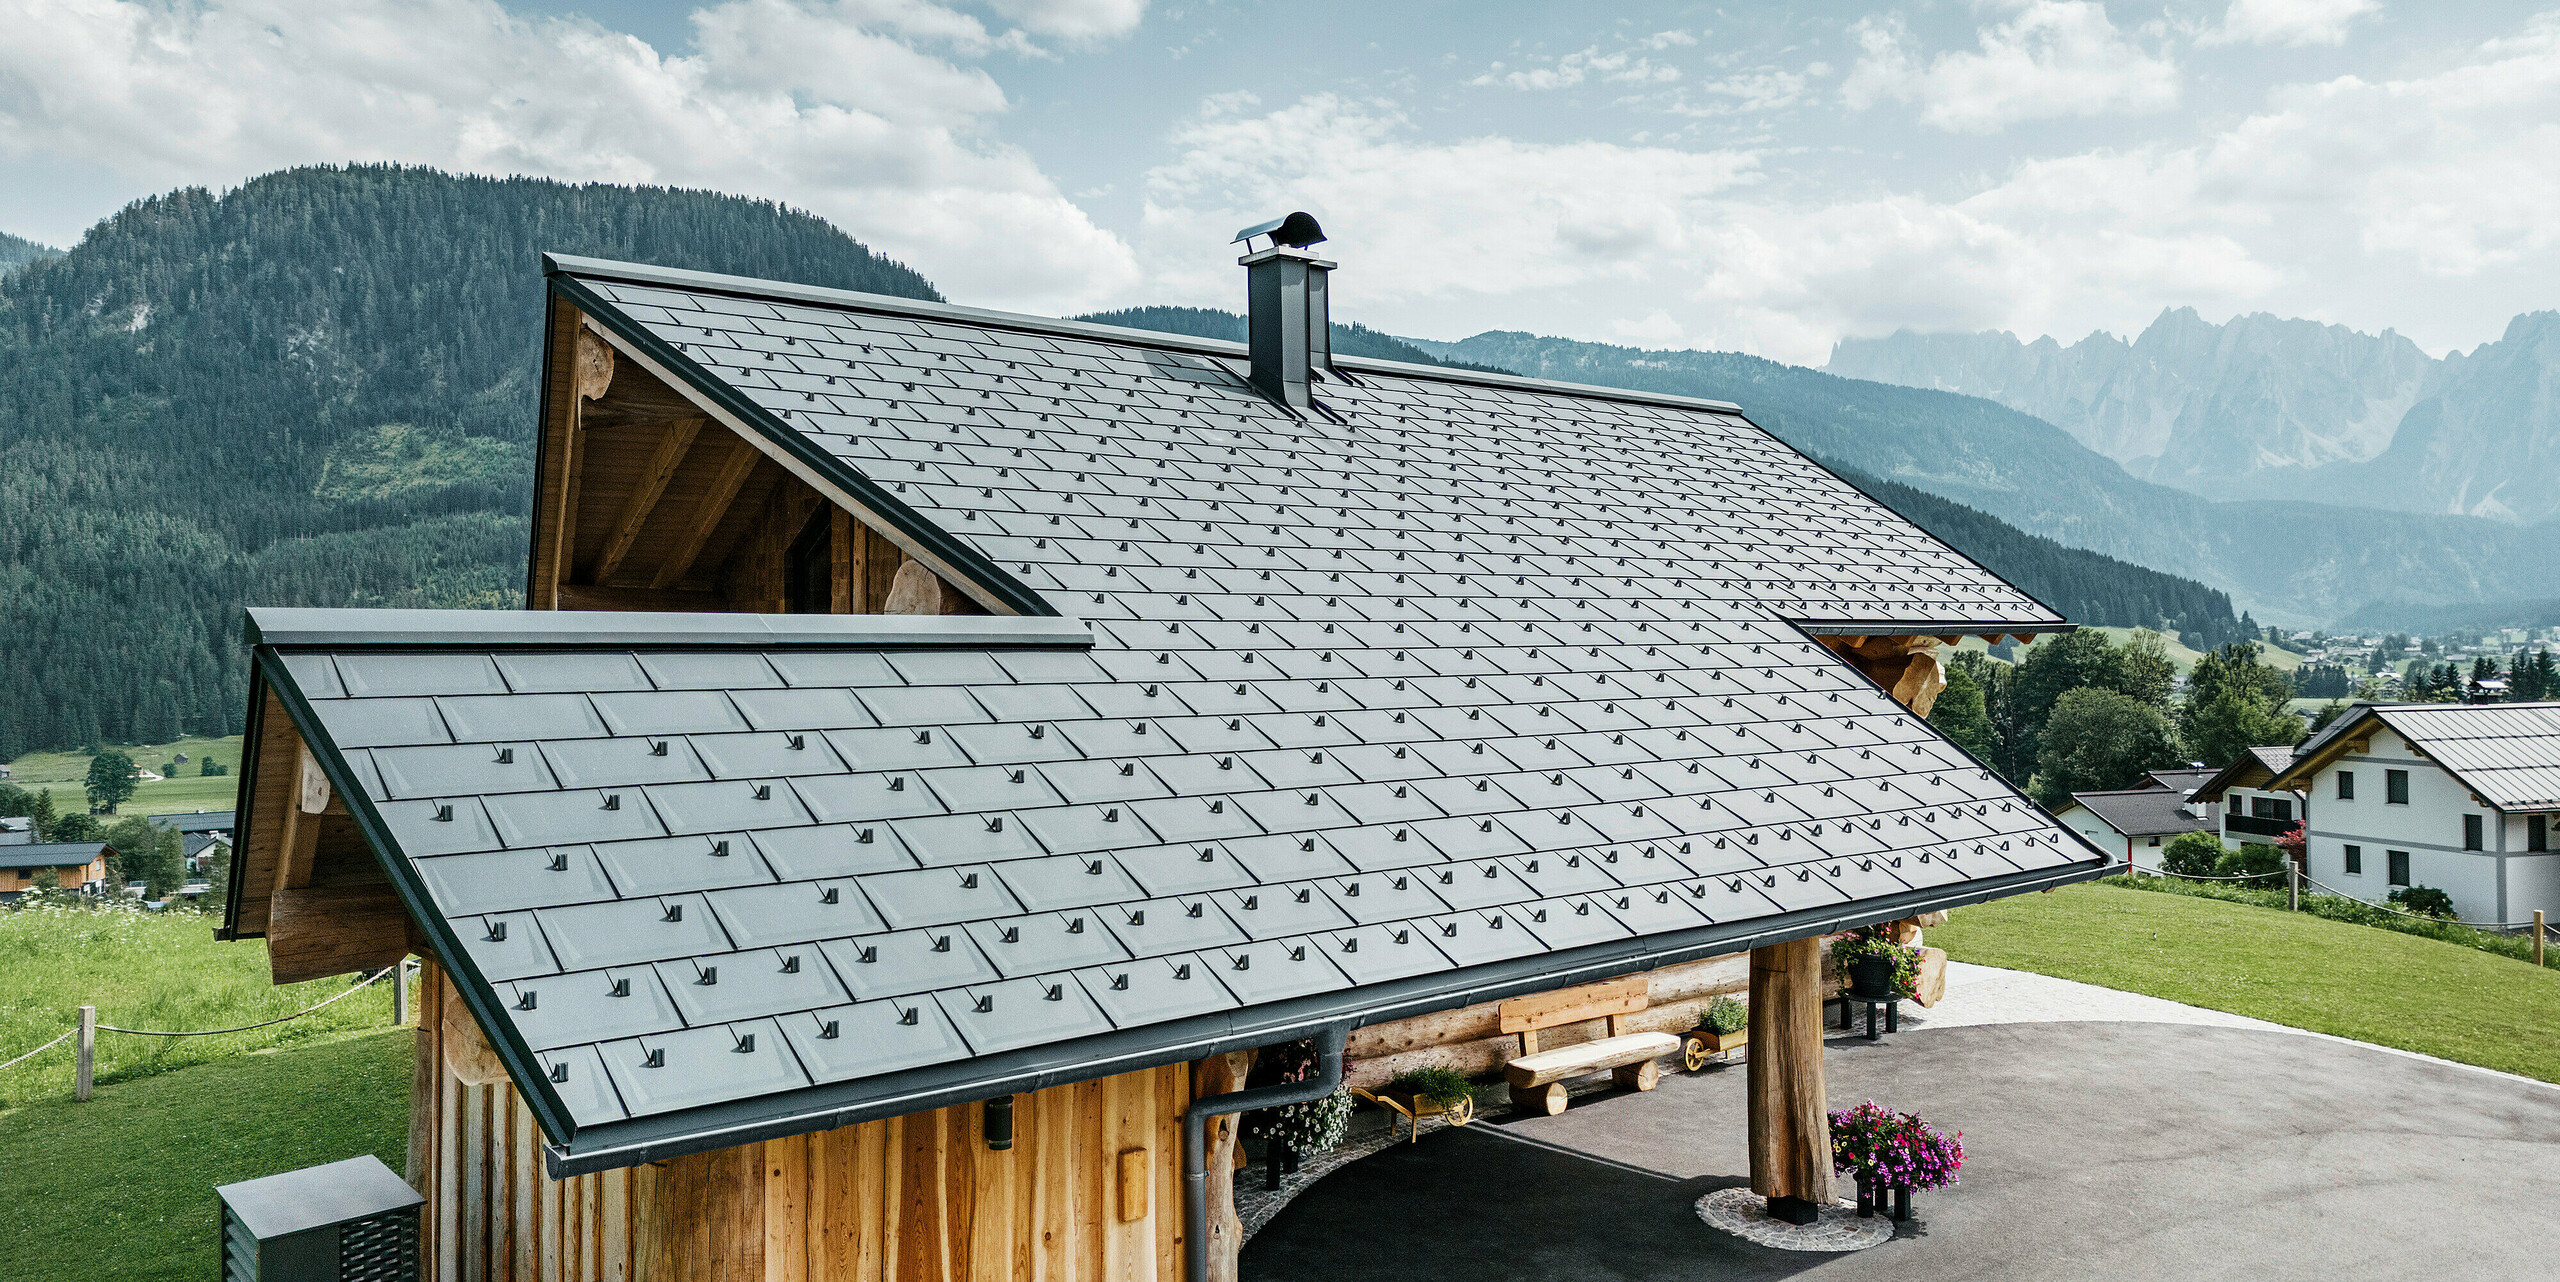 moderní a zároveň tradiční architektura spojená ve srubovém domě v rakouském Gosau. Dřevěný dům má střechu ze střešních panelů PREFA R.16 v barvě P.10 antracitové. Letecký pohled ukazuje preciznost střešní konstrukce, dokonalé začlenění do designu srubu a idylické začlenění do alpské krajiny s úchvatným horským panoramatem v pozadí. Střešní panely dodávají domu současný nádech a jsou v souladu s ekologicky šetrnou a udržitelnou výstavbou.